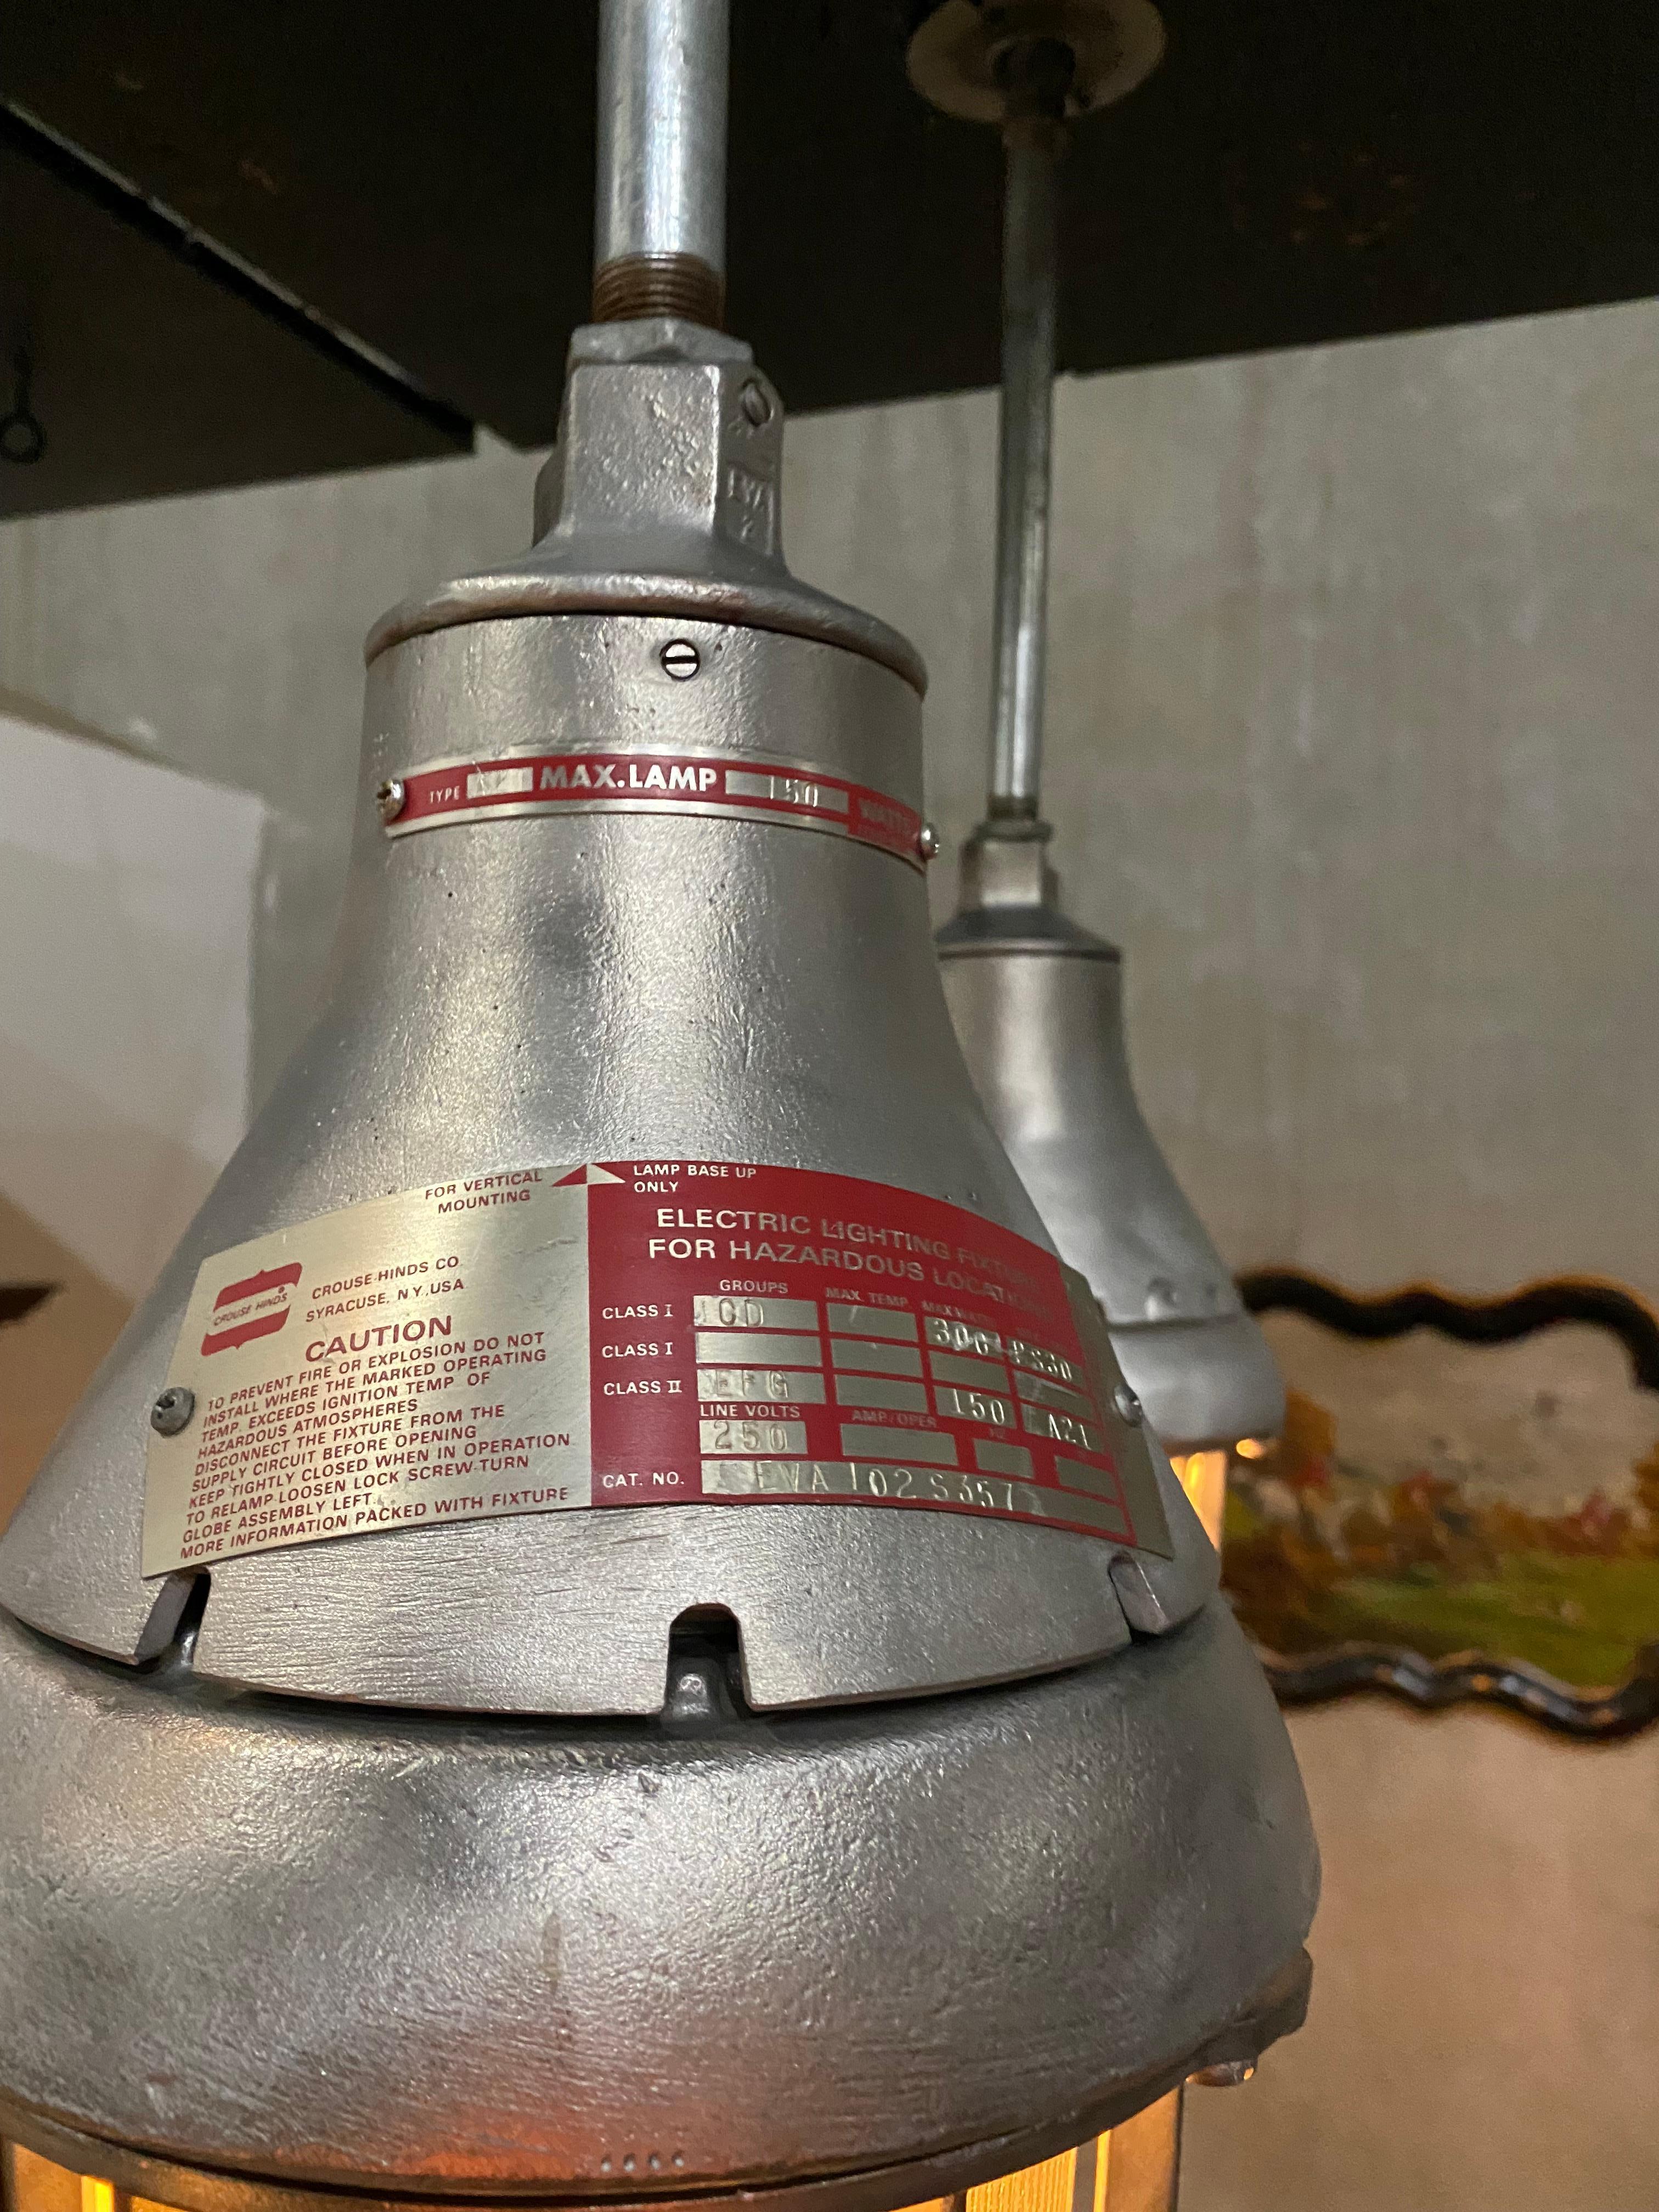 Paire de lampes industrielles Crouse-Hinds recâblées et approuvées CSA sur tuyau, prêtes à être accrochées .
Crouse-Hinds est un produit de base dans les installations industrielles en Amérique.

Il est possible de modifier la longueur du tuyau